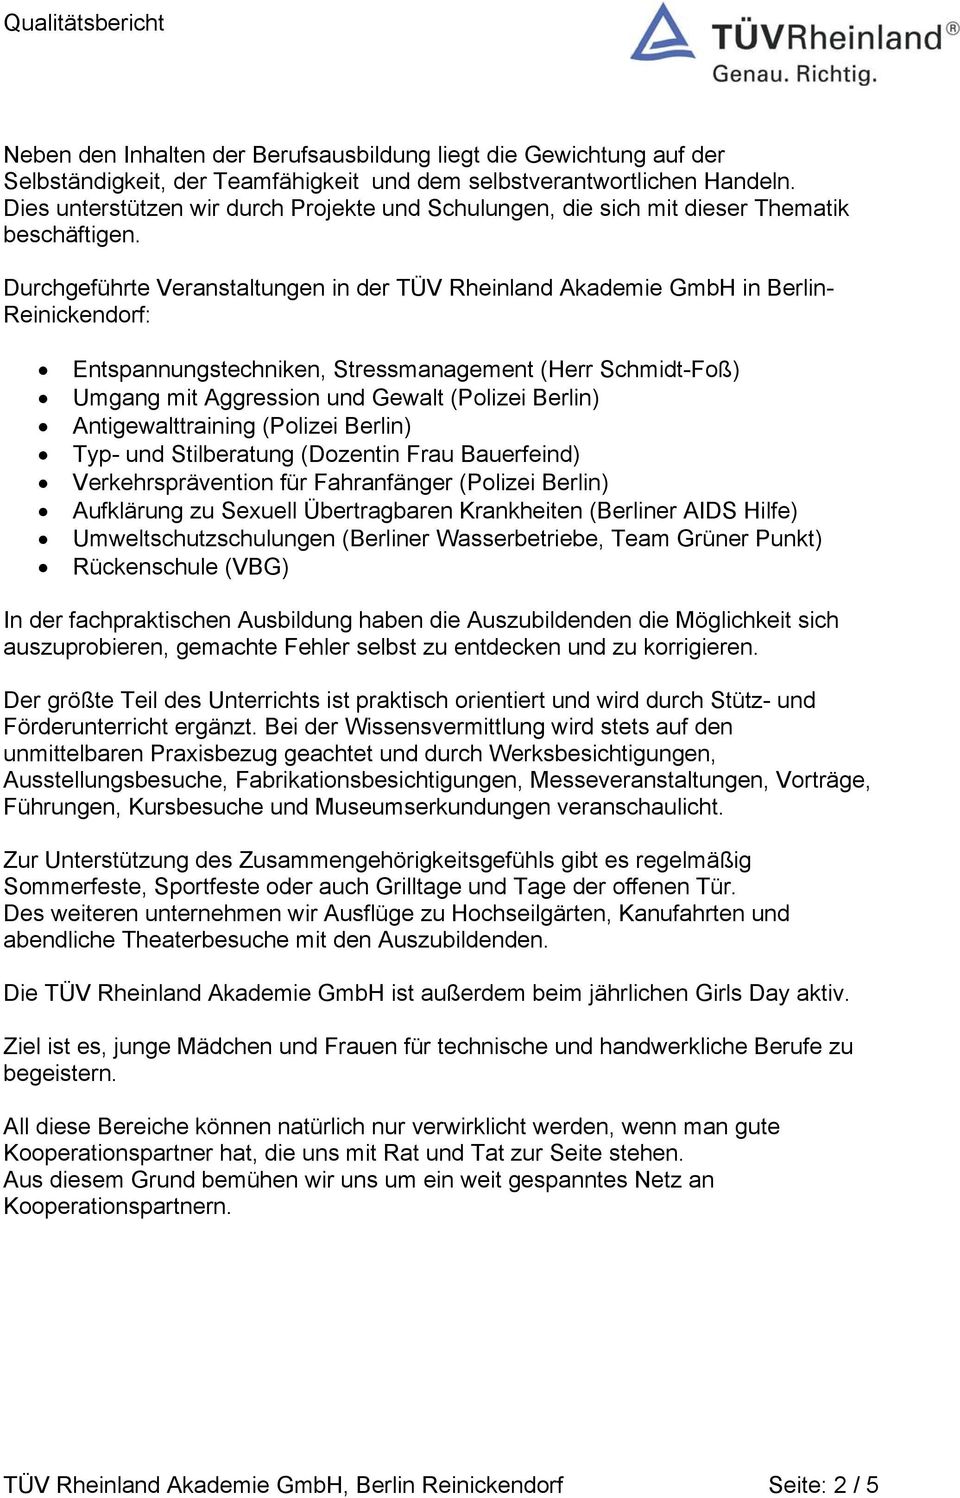 Durchgeführte Veranstaltungen in der TÜV Rheinland Akademie GmbH in Berlin- Reinickendorf: Entspannungstechniken, Stressmanagement (Herr Schmidt-Foß) Umgang mit Aggression und Gewalt (Polizei Berlin)